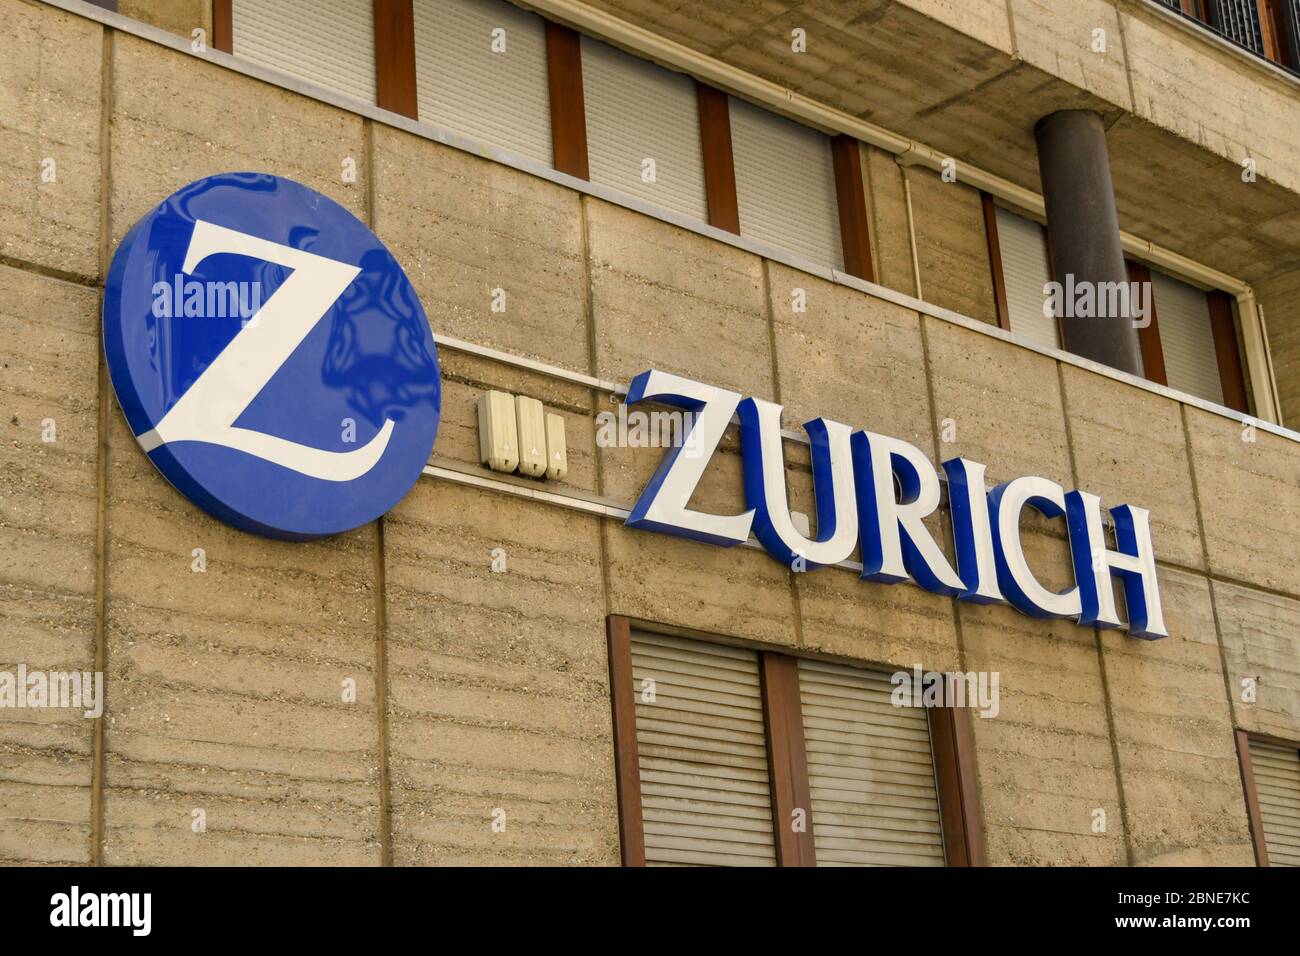 COMO, ITALIA - GIUGNO 2019: Firma sul muro degli uffici di Zurigo, un'attività di servizi finanziari. Foto Stock